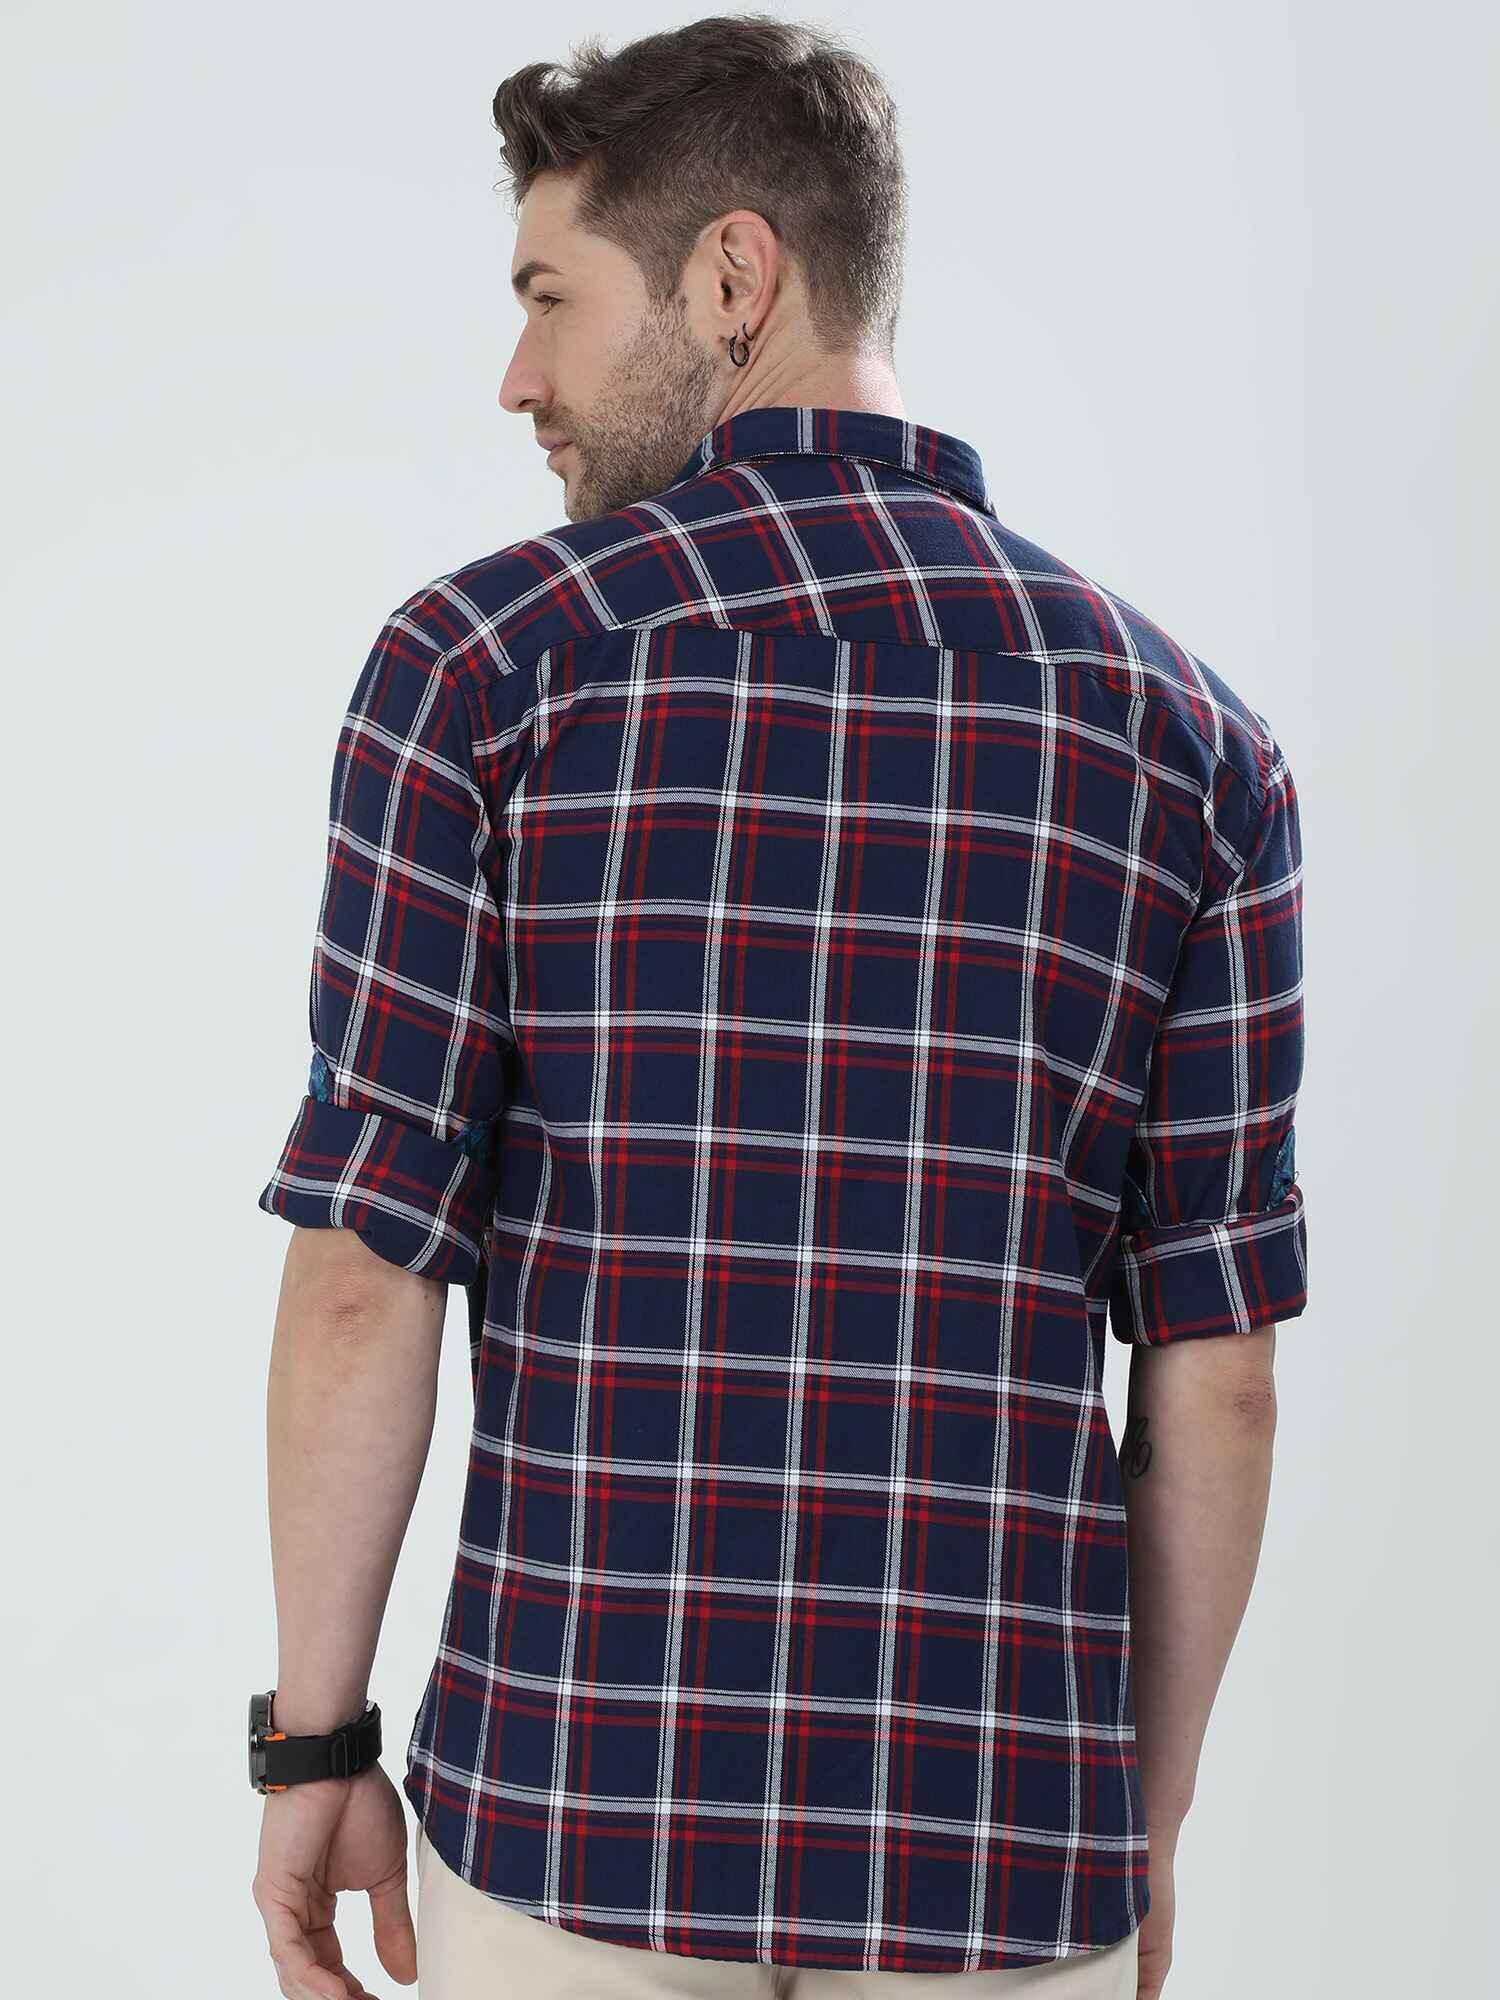 Indigo Checkered Cotton Shirt - Guniaa Fashions